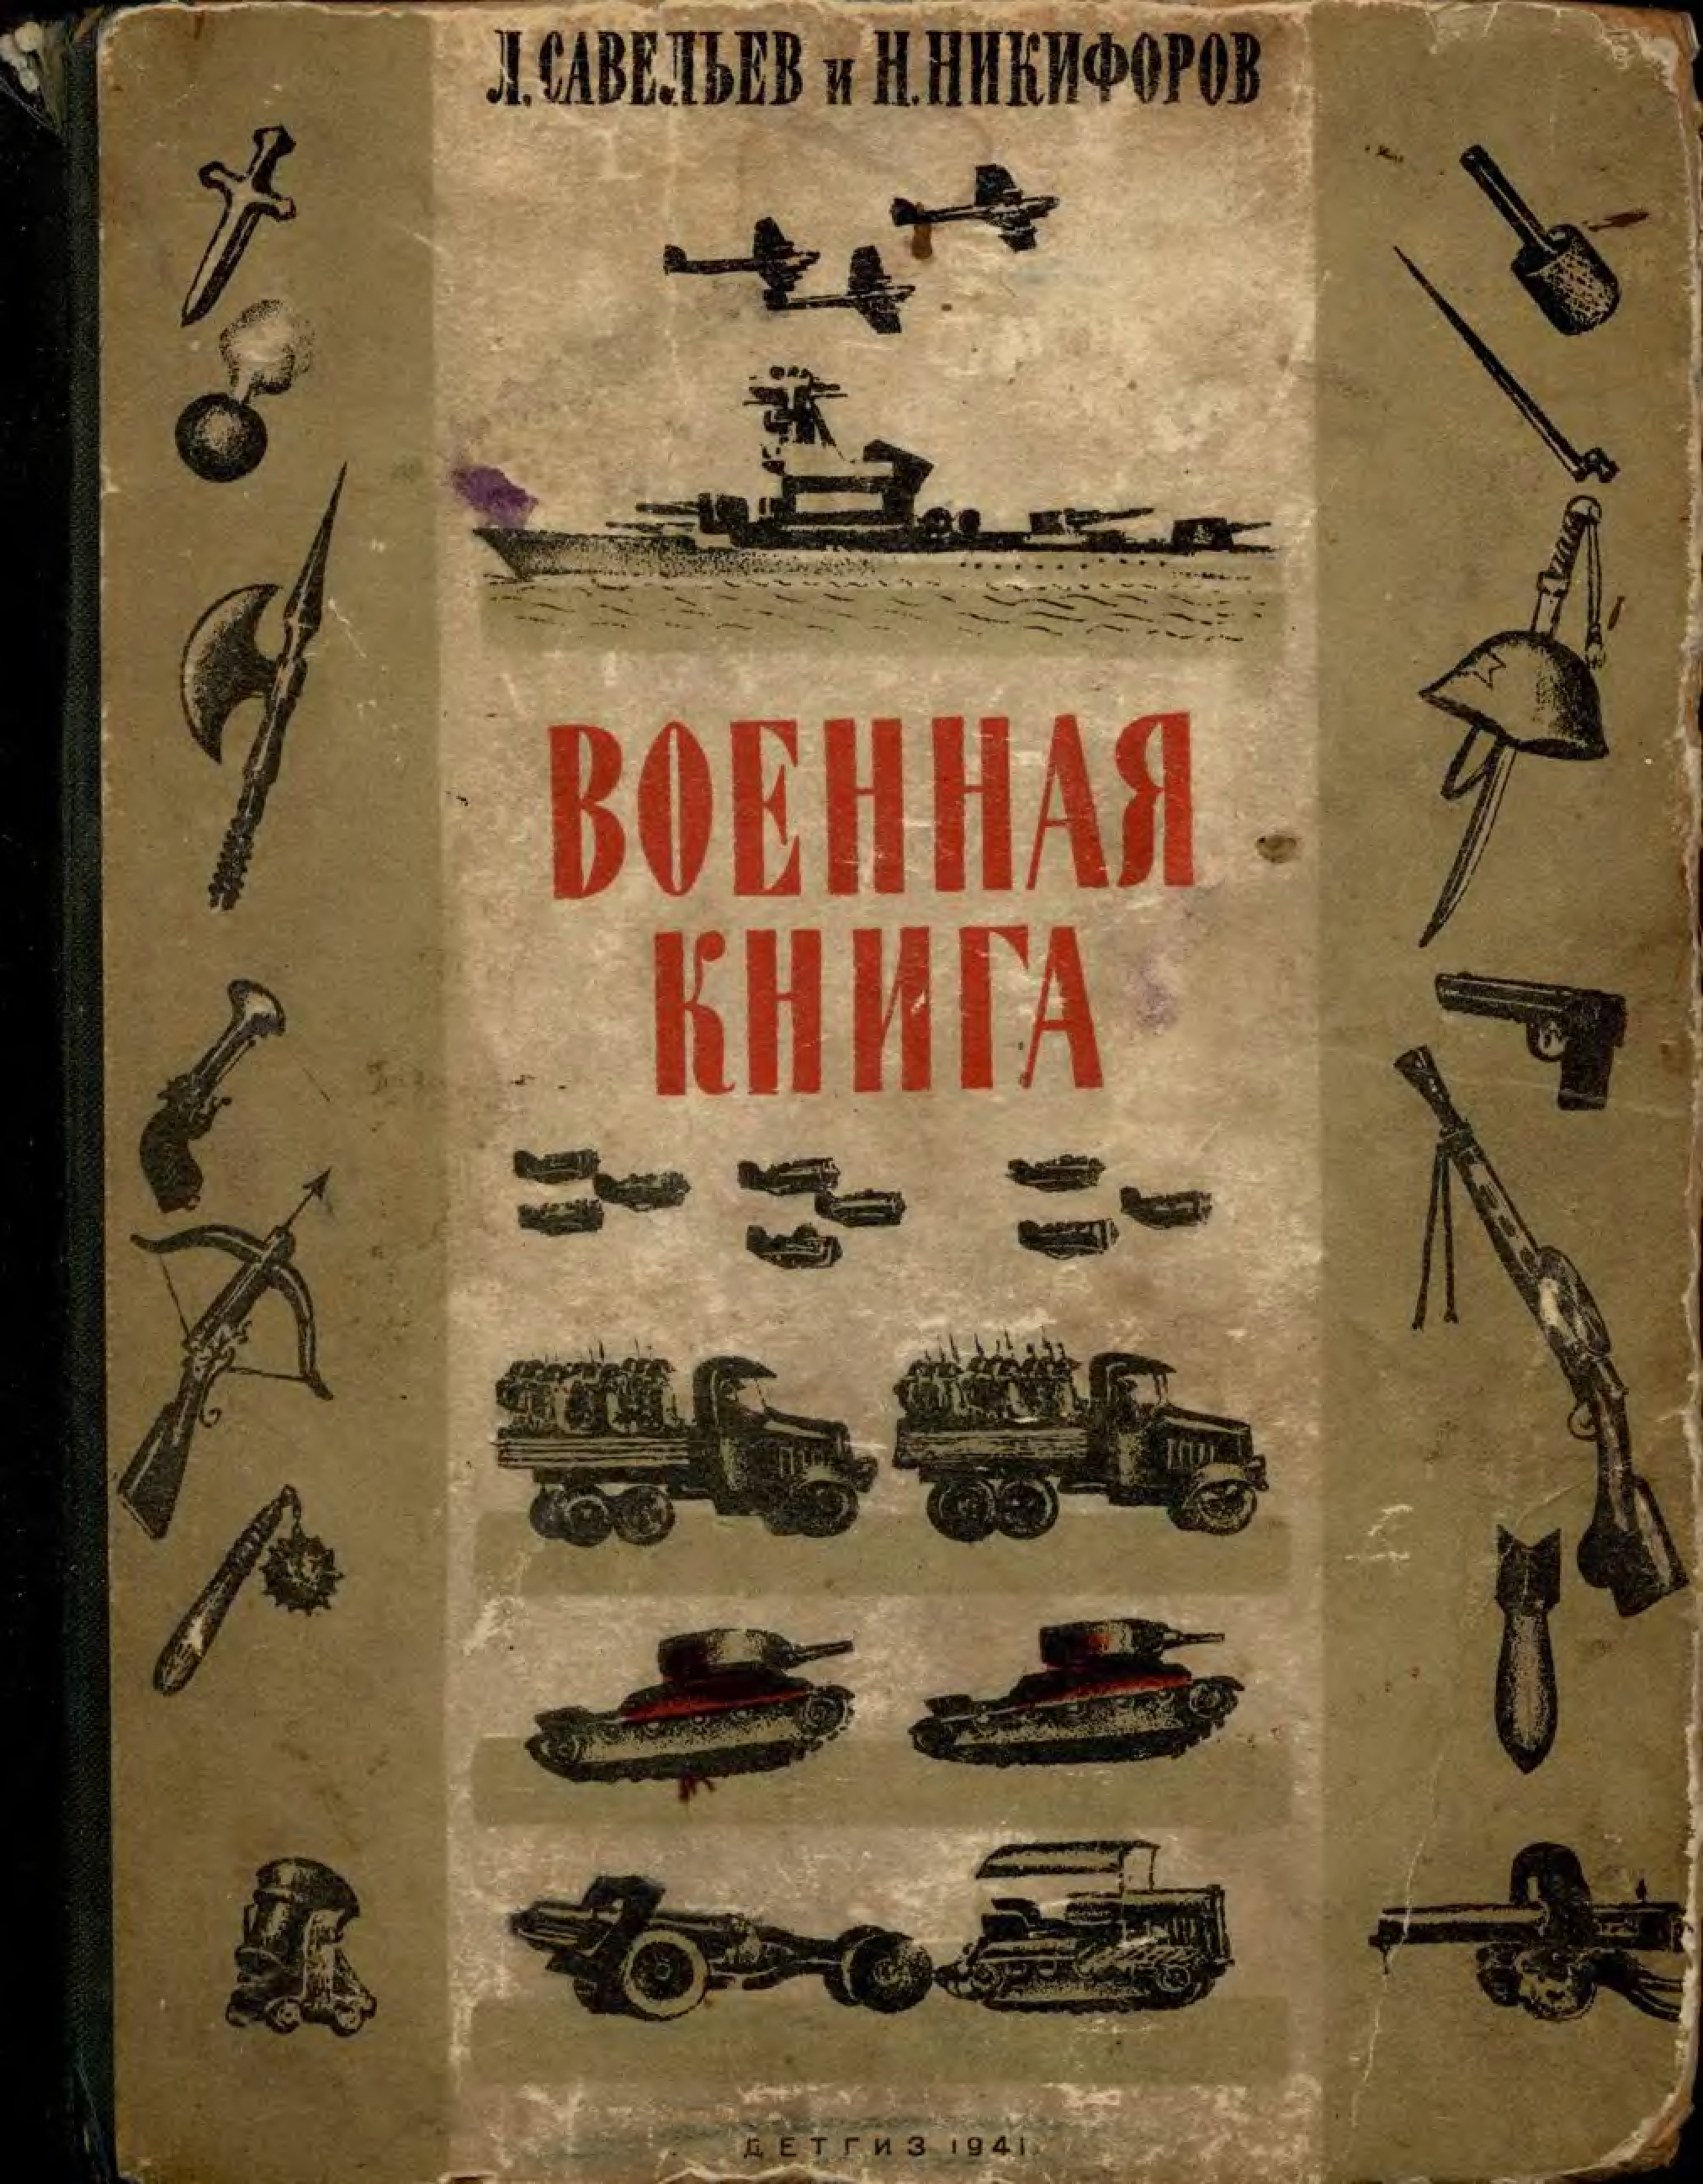 Читать книги про военных. Военные книги. Книга Военная книга. Советские военные книги. Советские книги о войне.